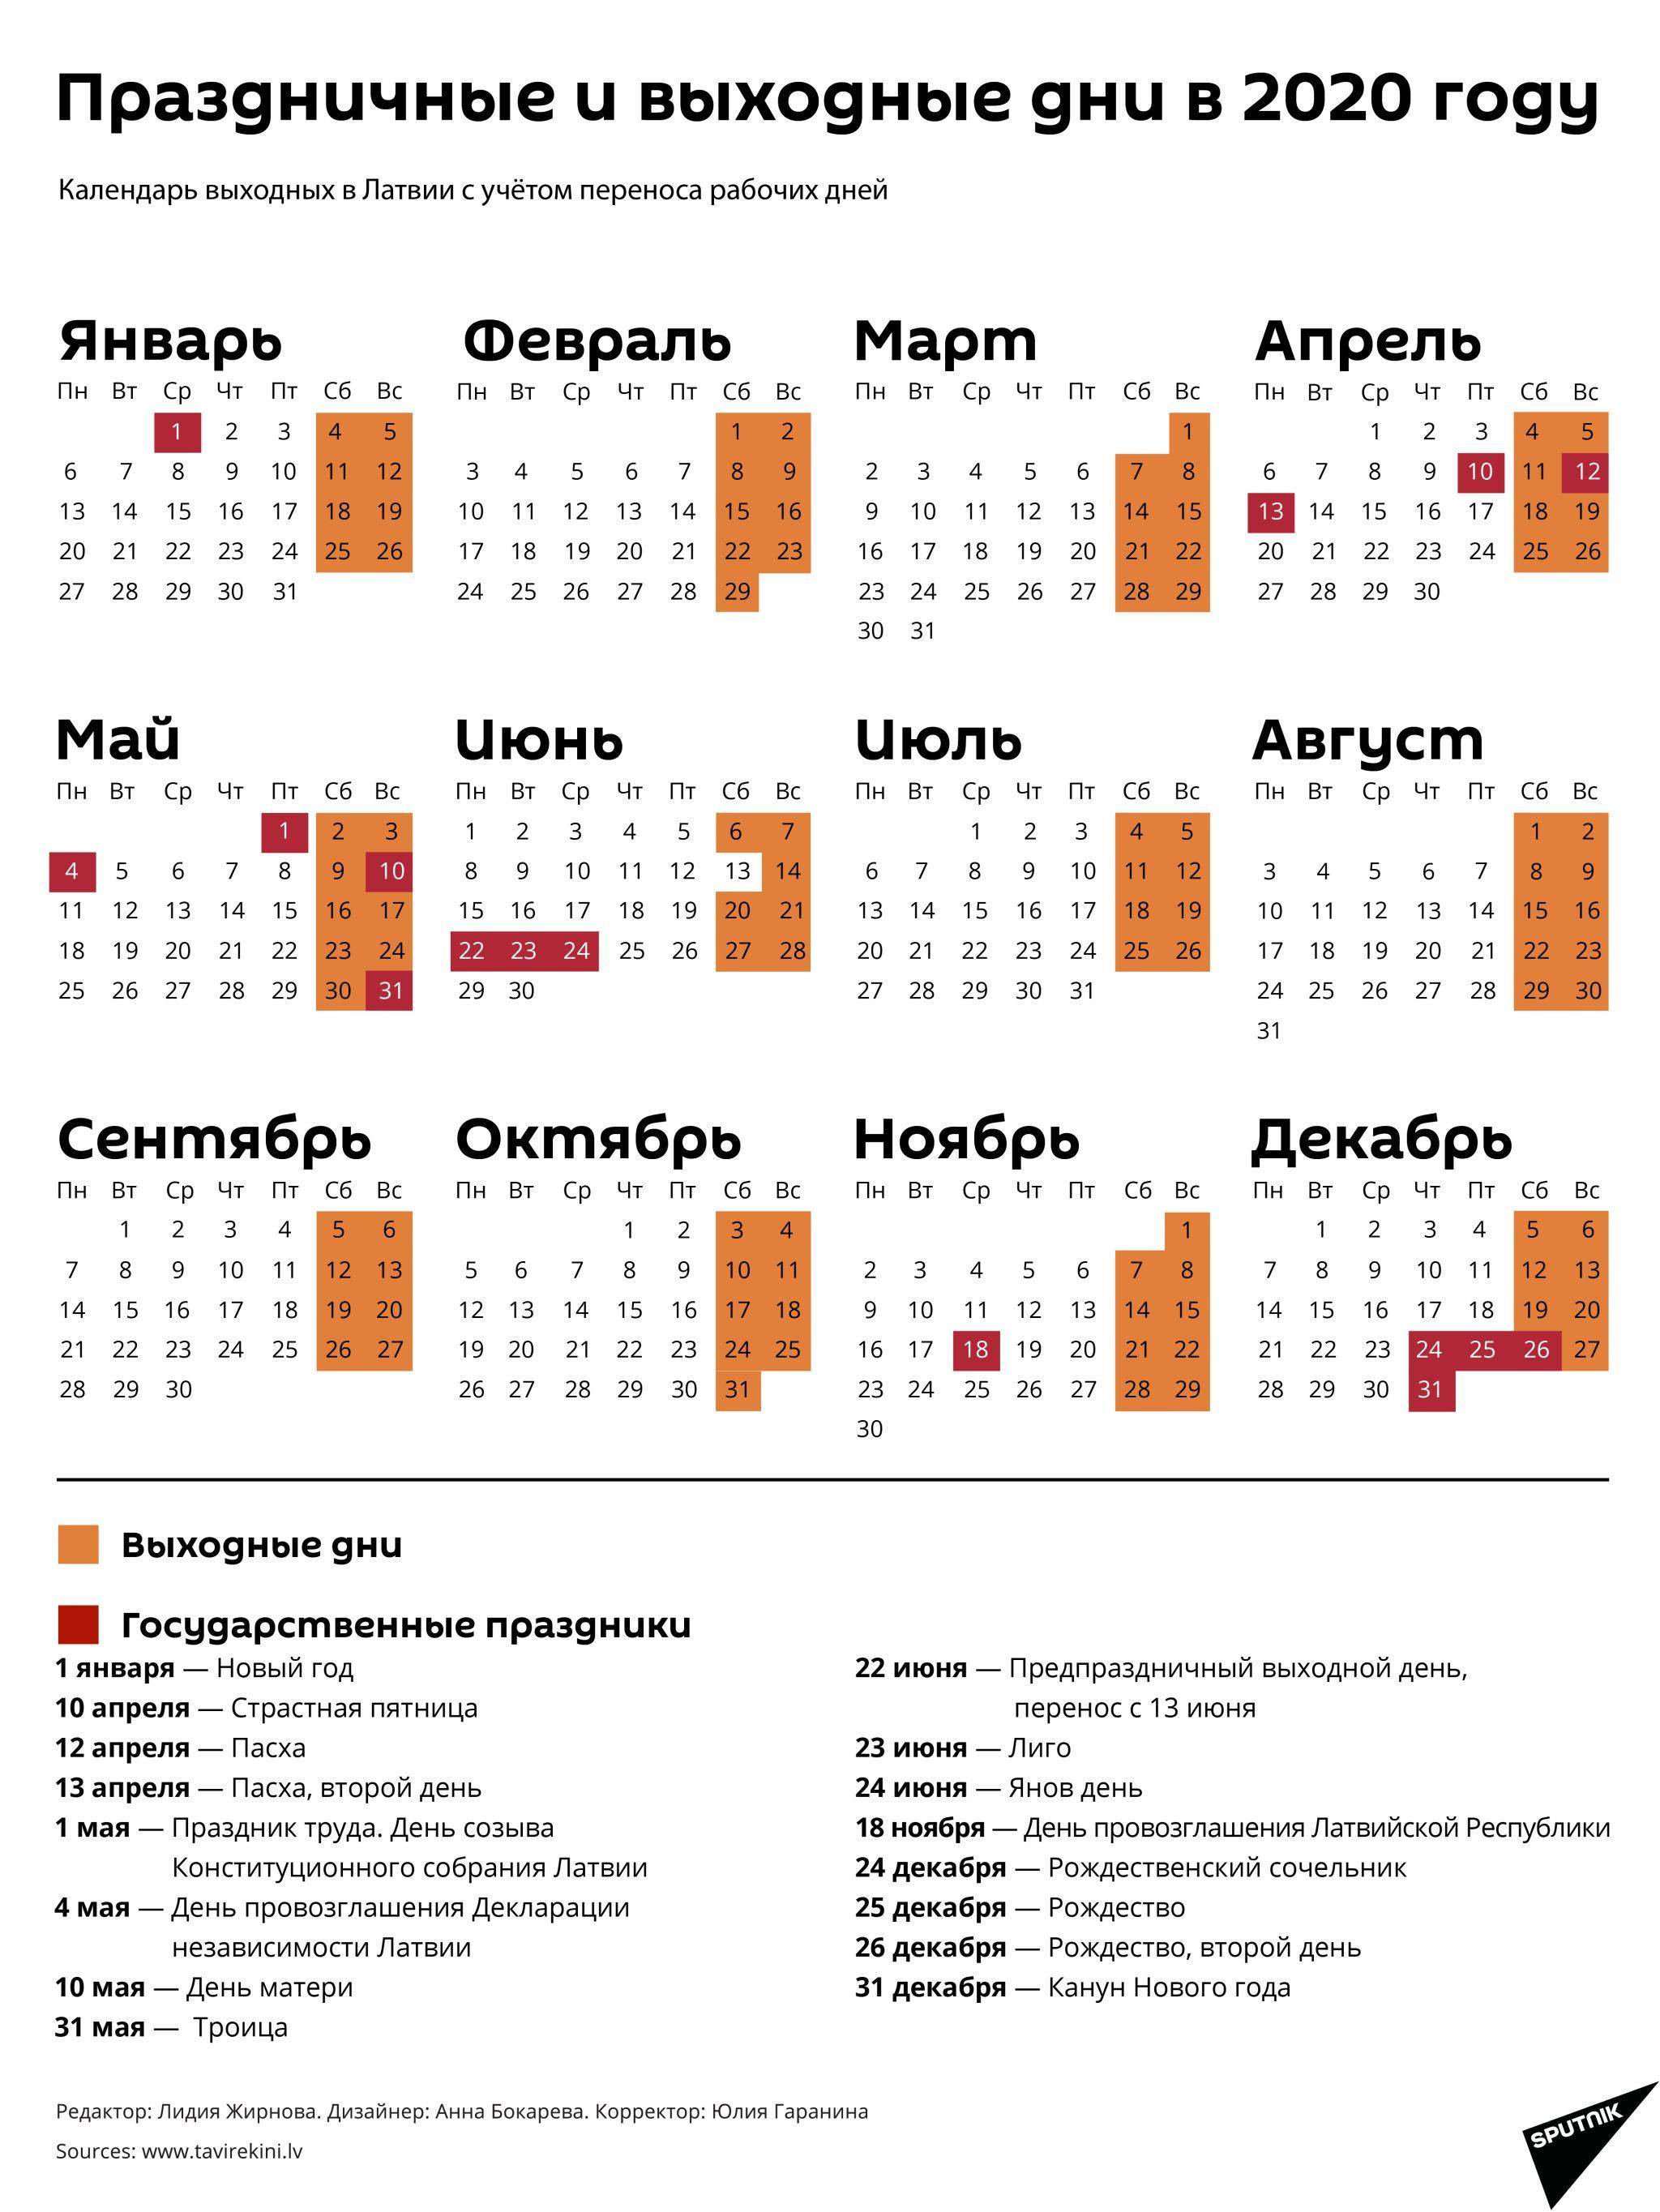 Как отдыхаем на майские праздники  в России